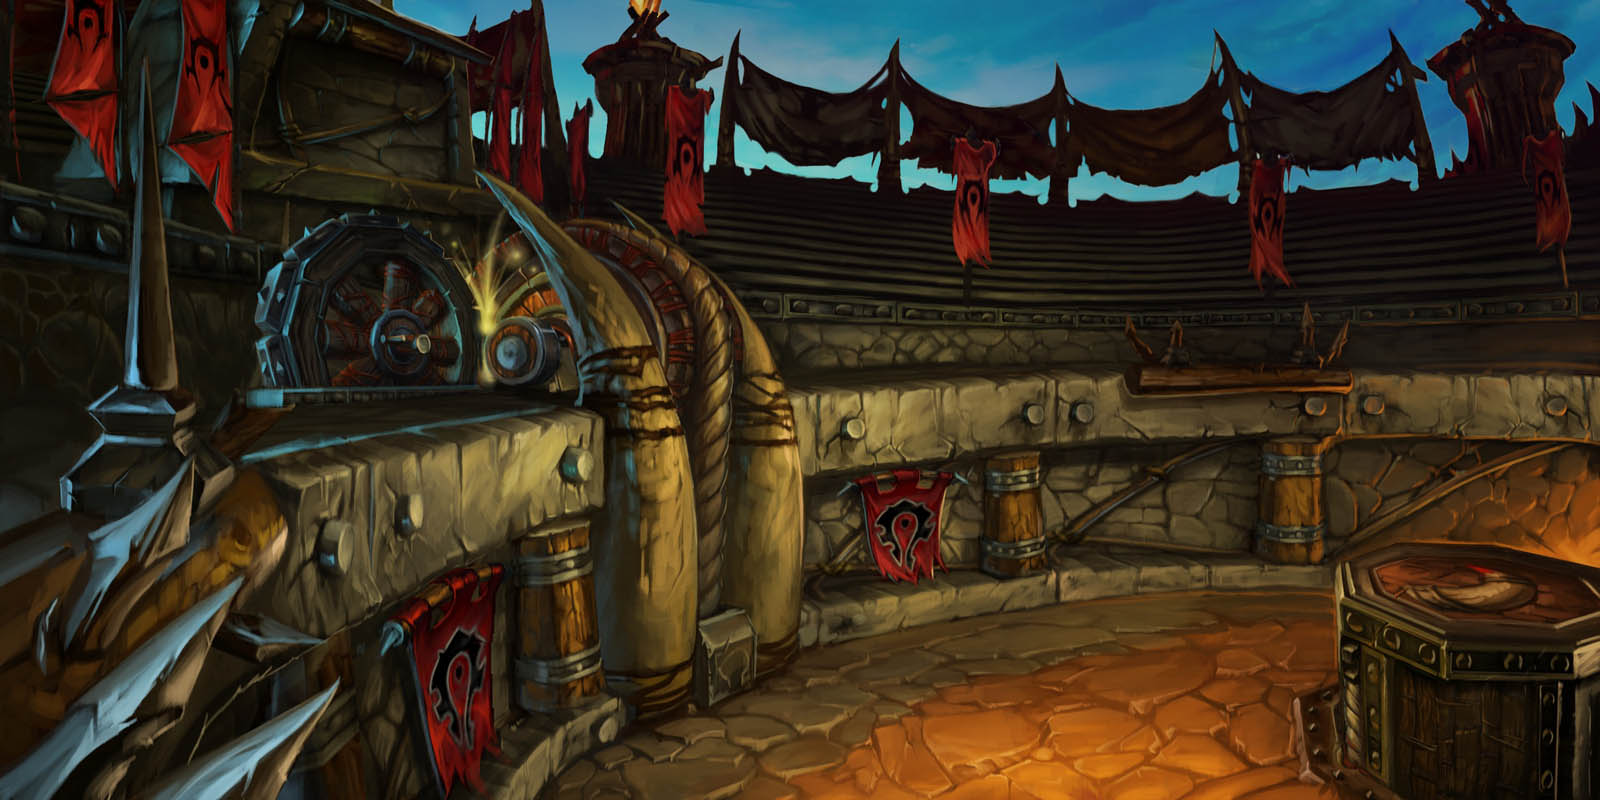 Descarga gratuita de fondo de pantalla para móvil de Warcraft, Videojuego, World Of Warcraft: La Ira Del Rey Exánime.